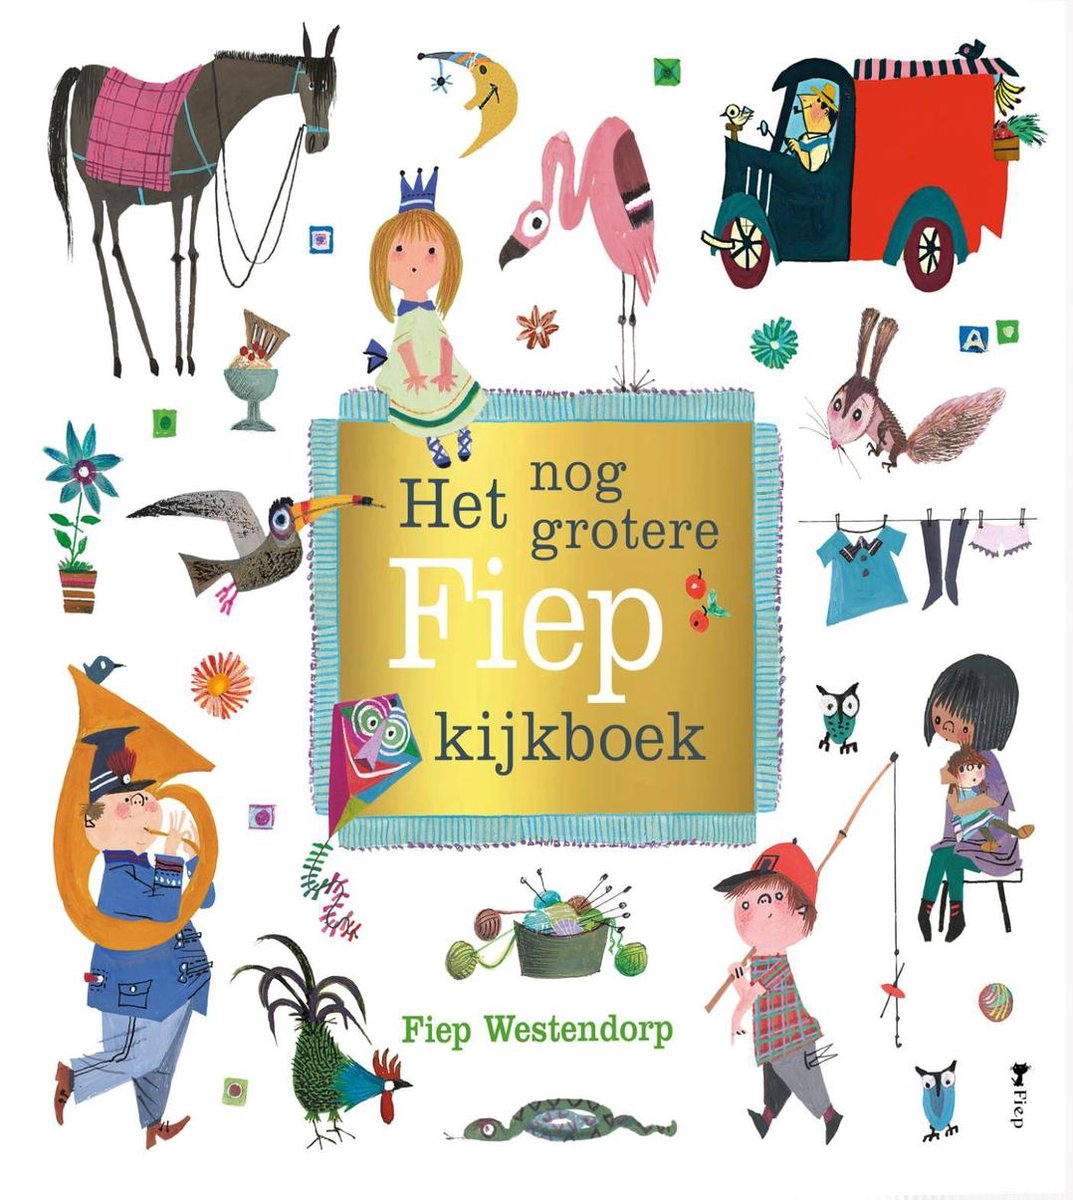 Het nog grotere Fiep kijkboek - Fiep Westendorp